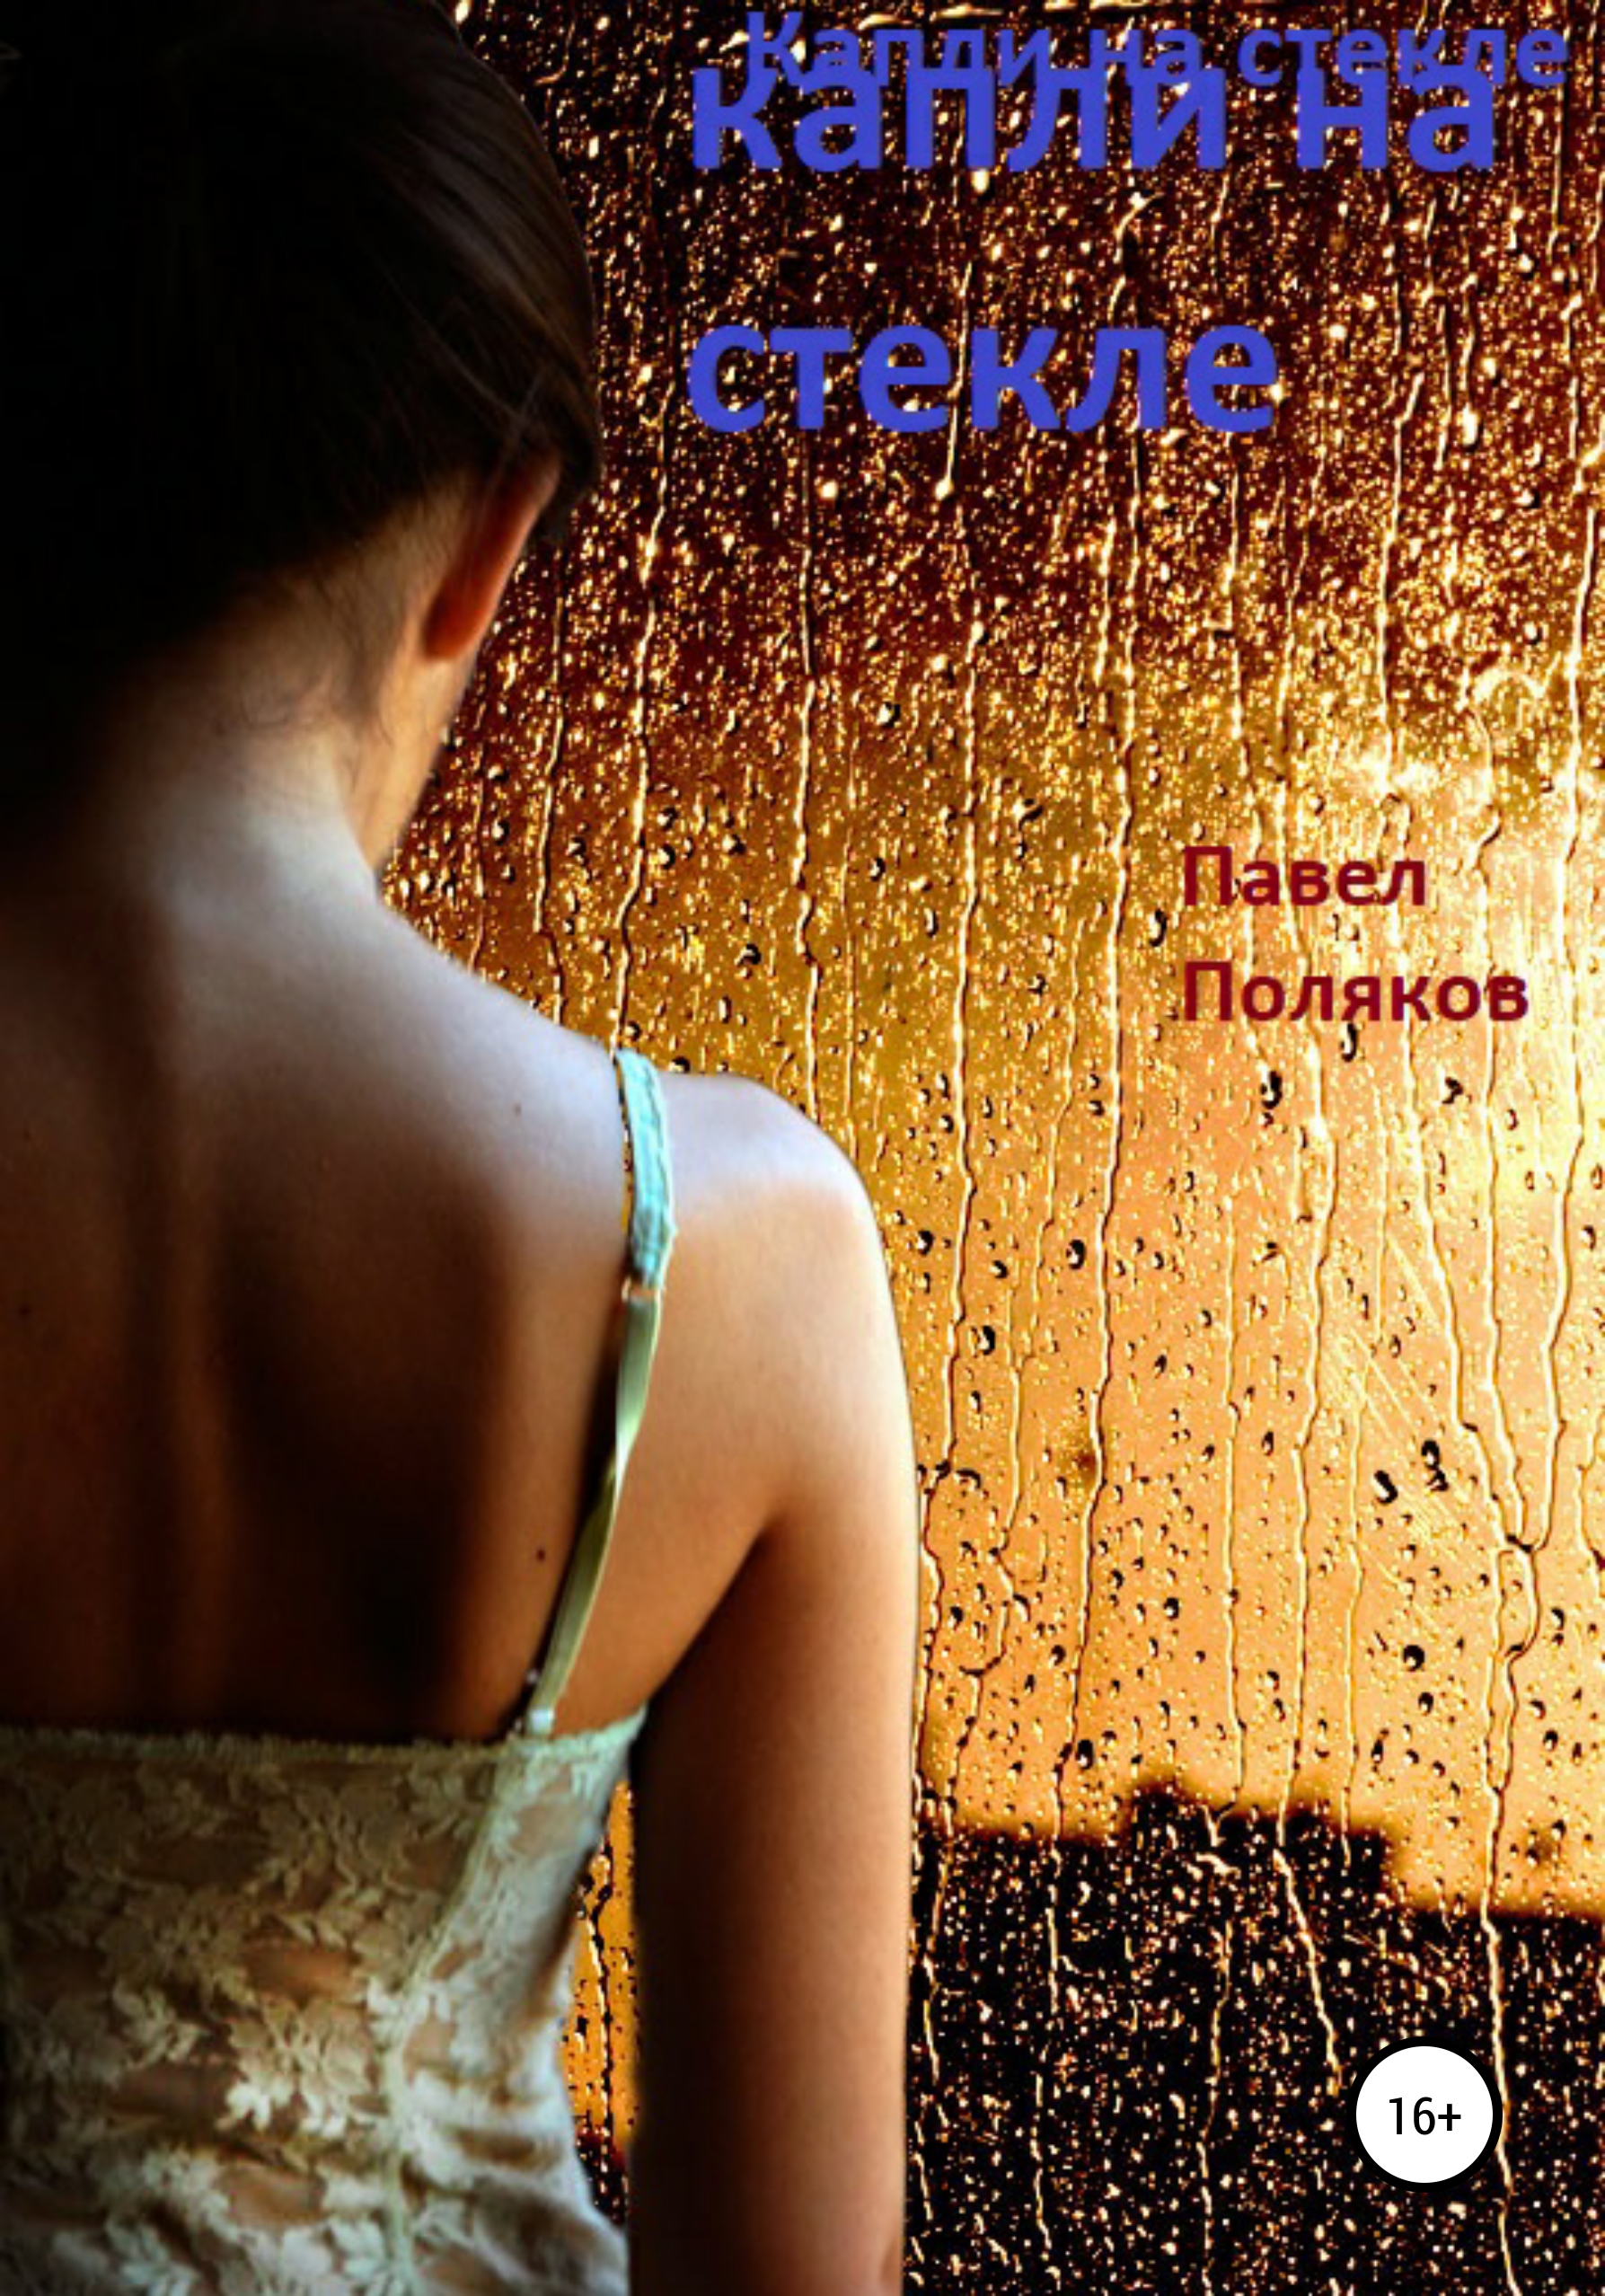 Девушка увидела в душе. Девушка со спины. Девушка под дождем. Девушка под дождем со спины. Женщина у окна дождь.